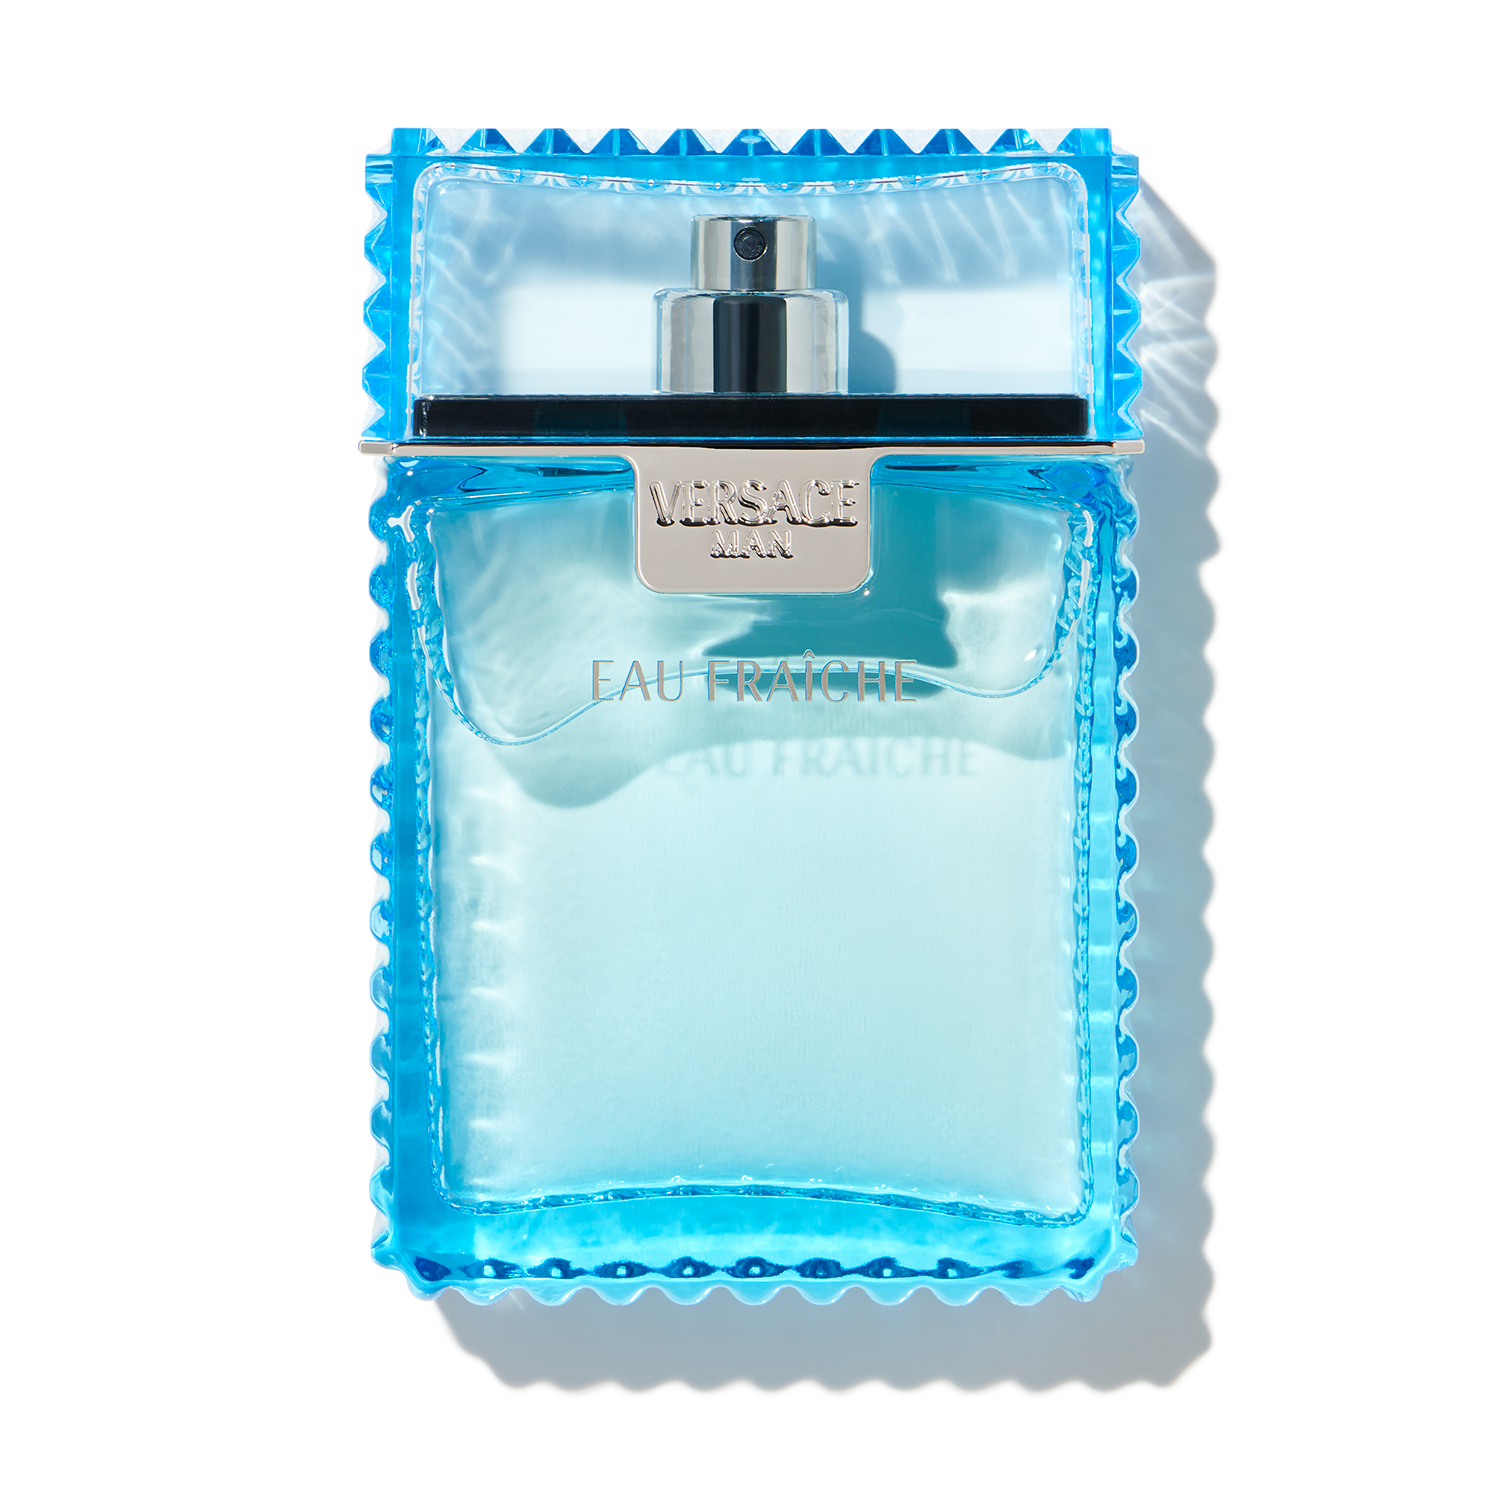 Chanel - Bleu De Chanel Parfum Spray 50ml/1.7oz - Perfume